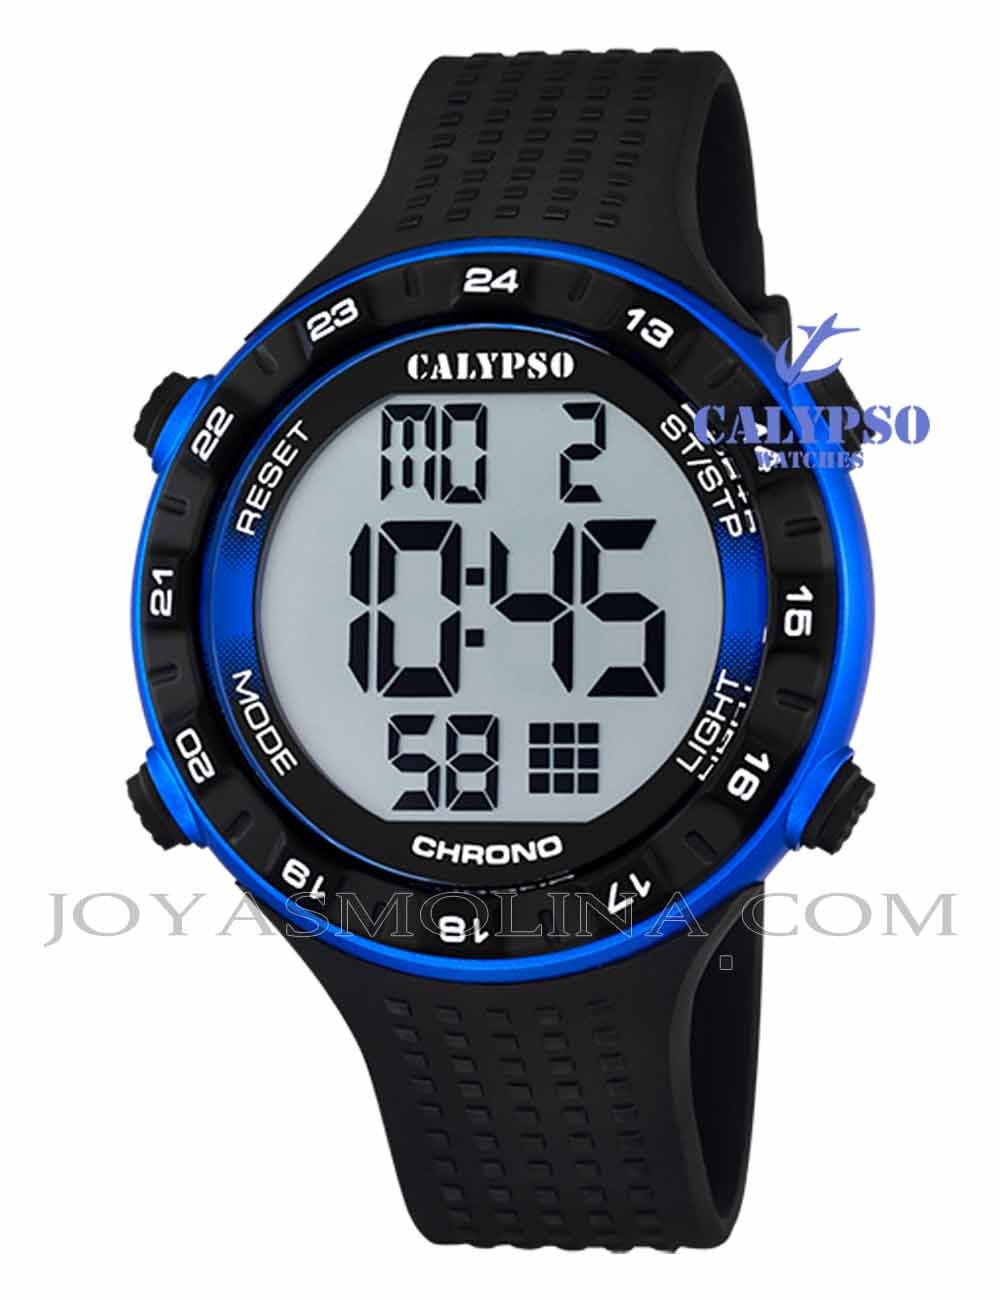 Reloj Calypso hombre o niño digital silicona negro y azul